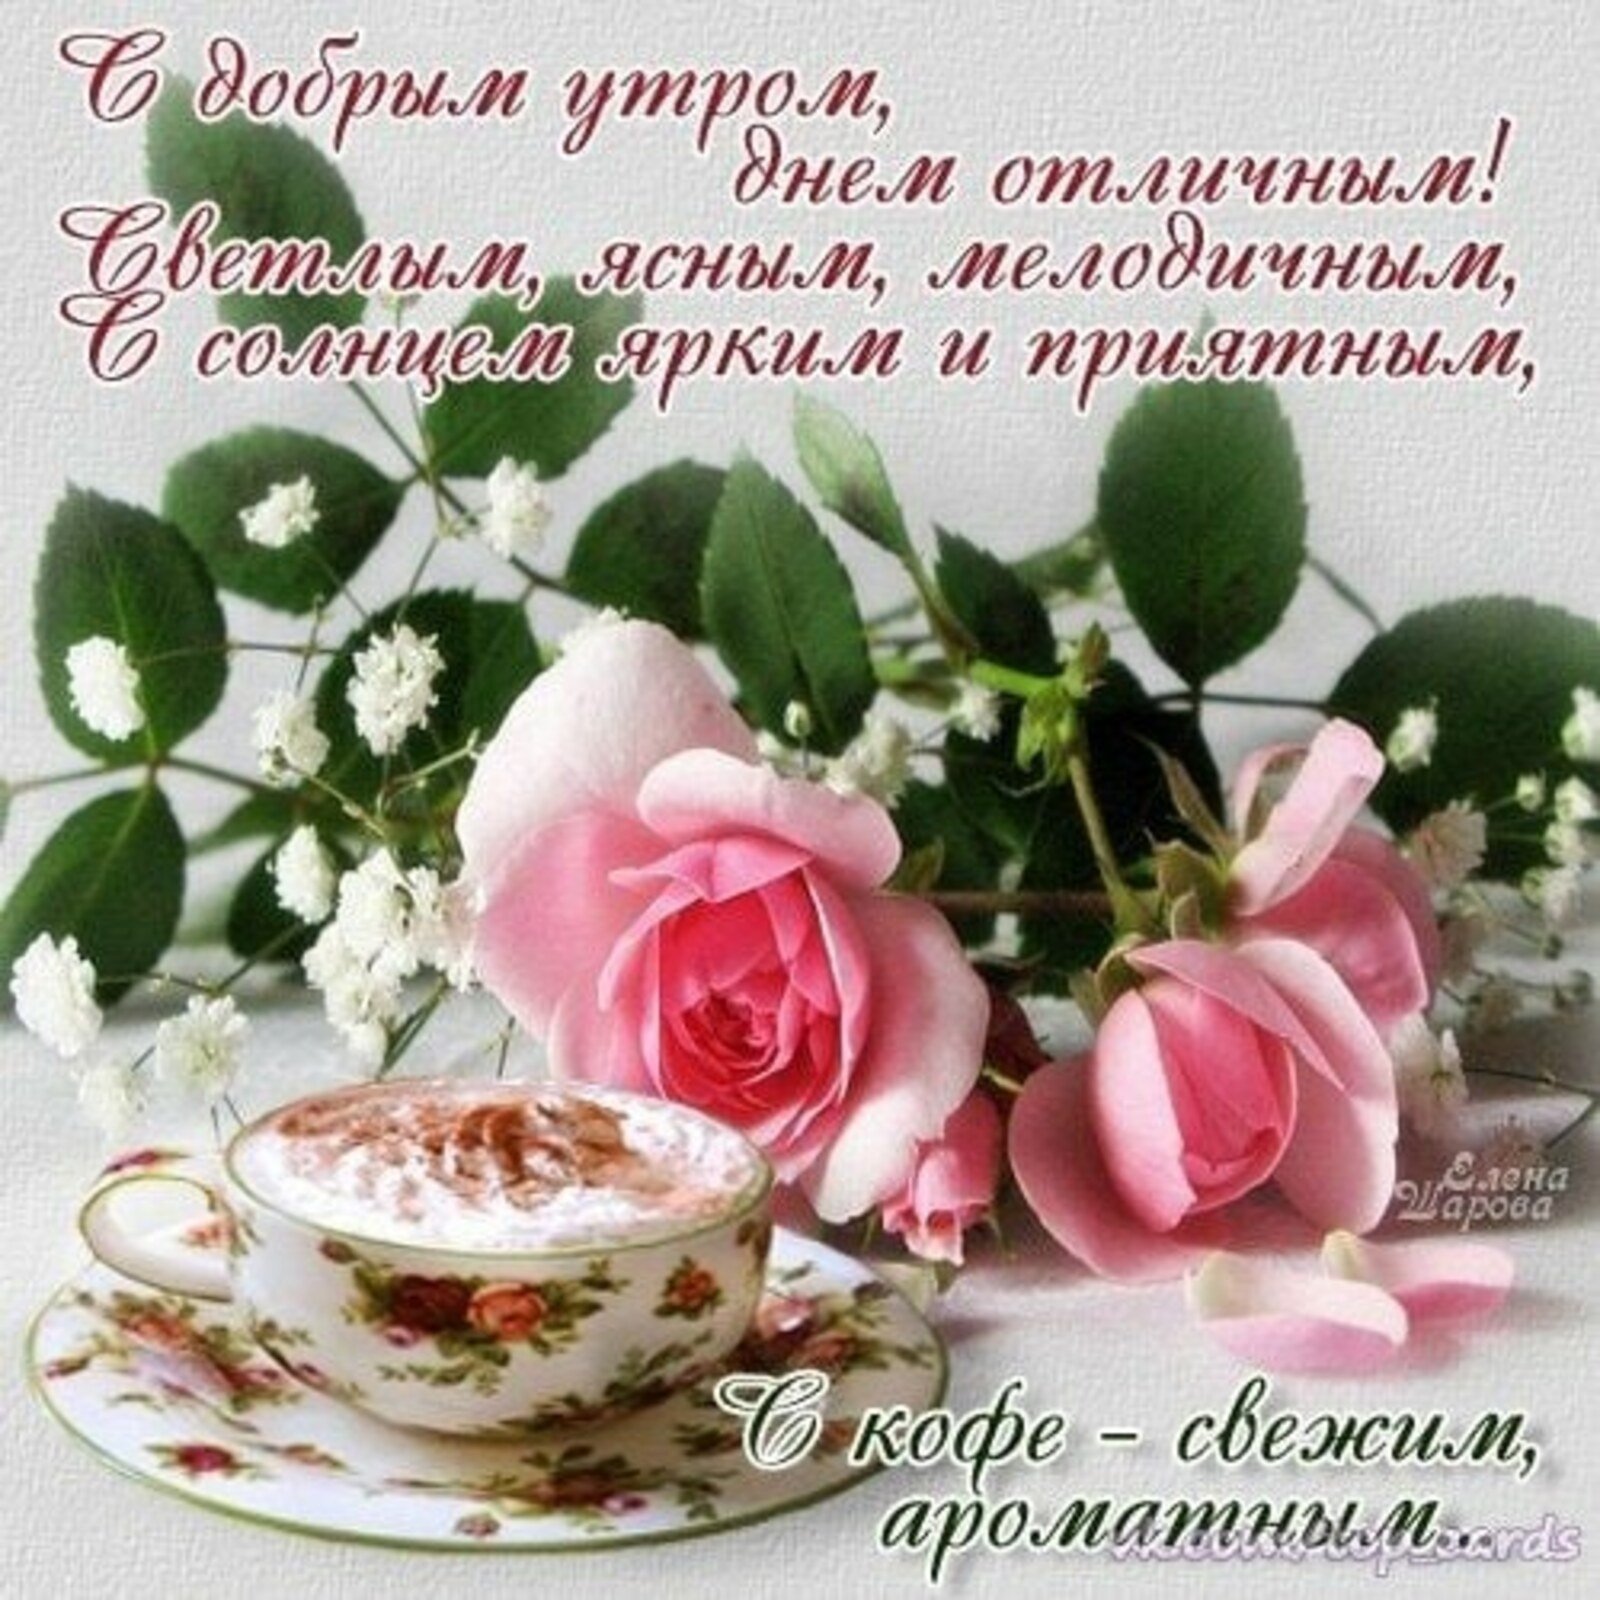 Доброе утро открытки с пожеланиями. Утренние цветы с пожеланиями. Открытки с добрым утром и добрыми пожеланиями. С добрым утром цветы пожелания. Пожелания доброго утра и доброго дня.